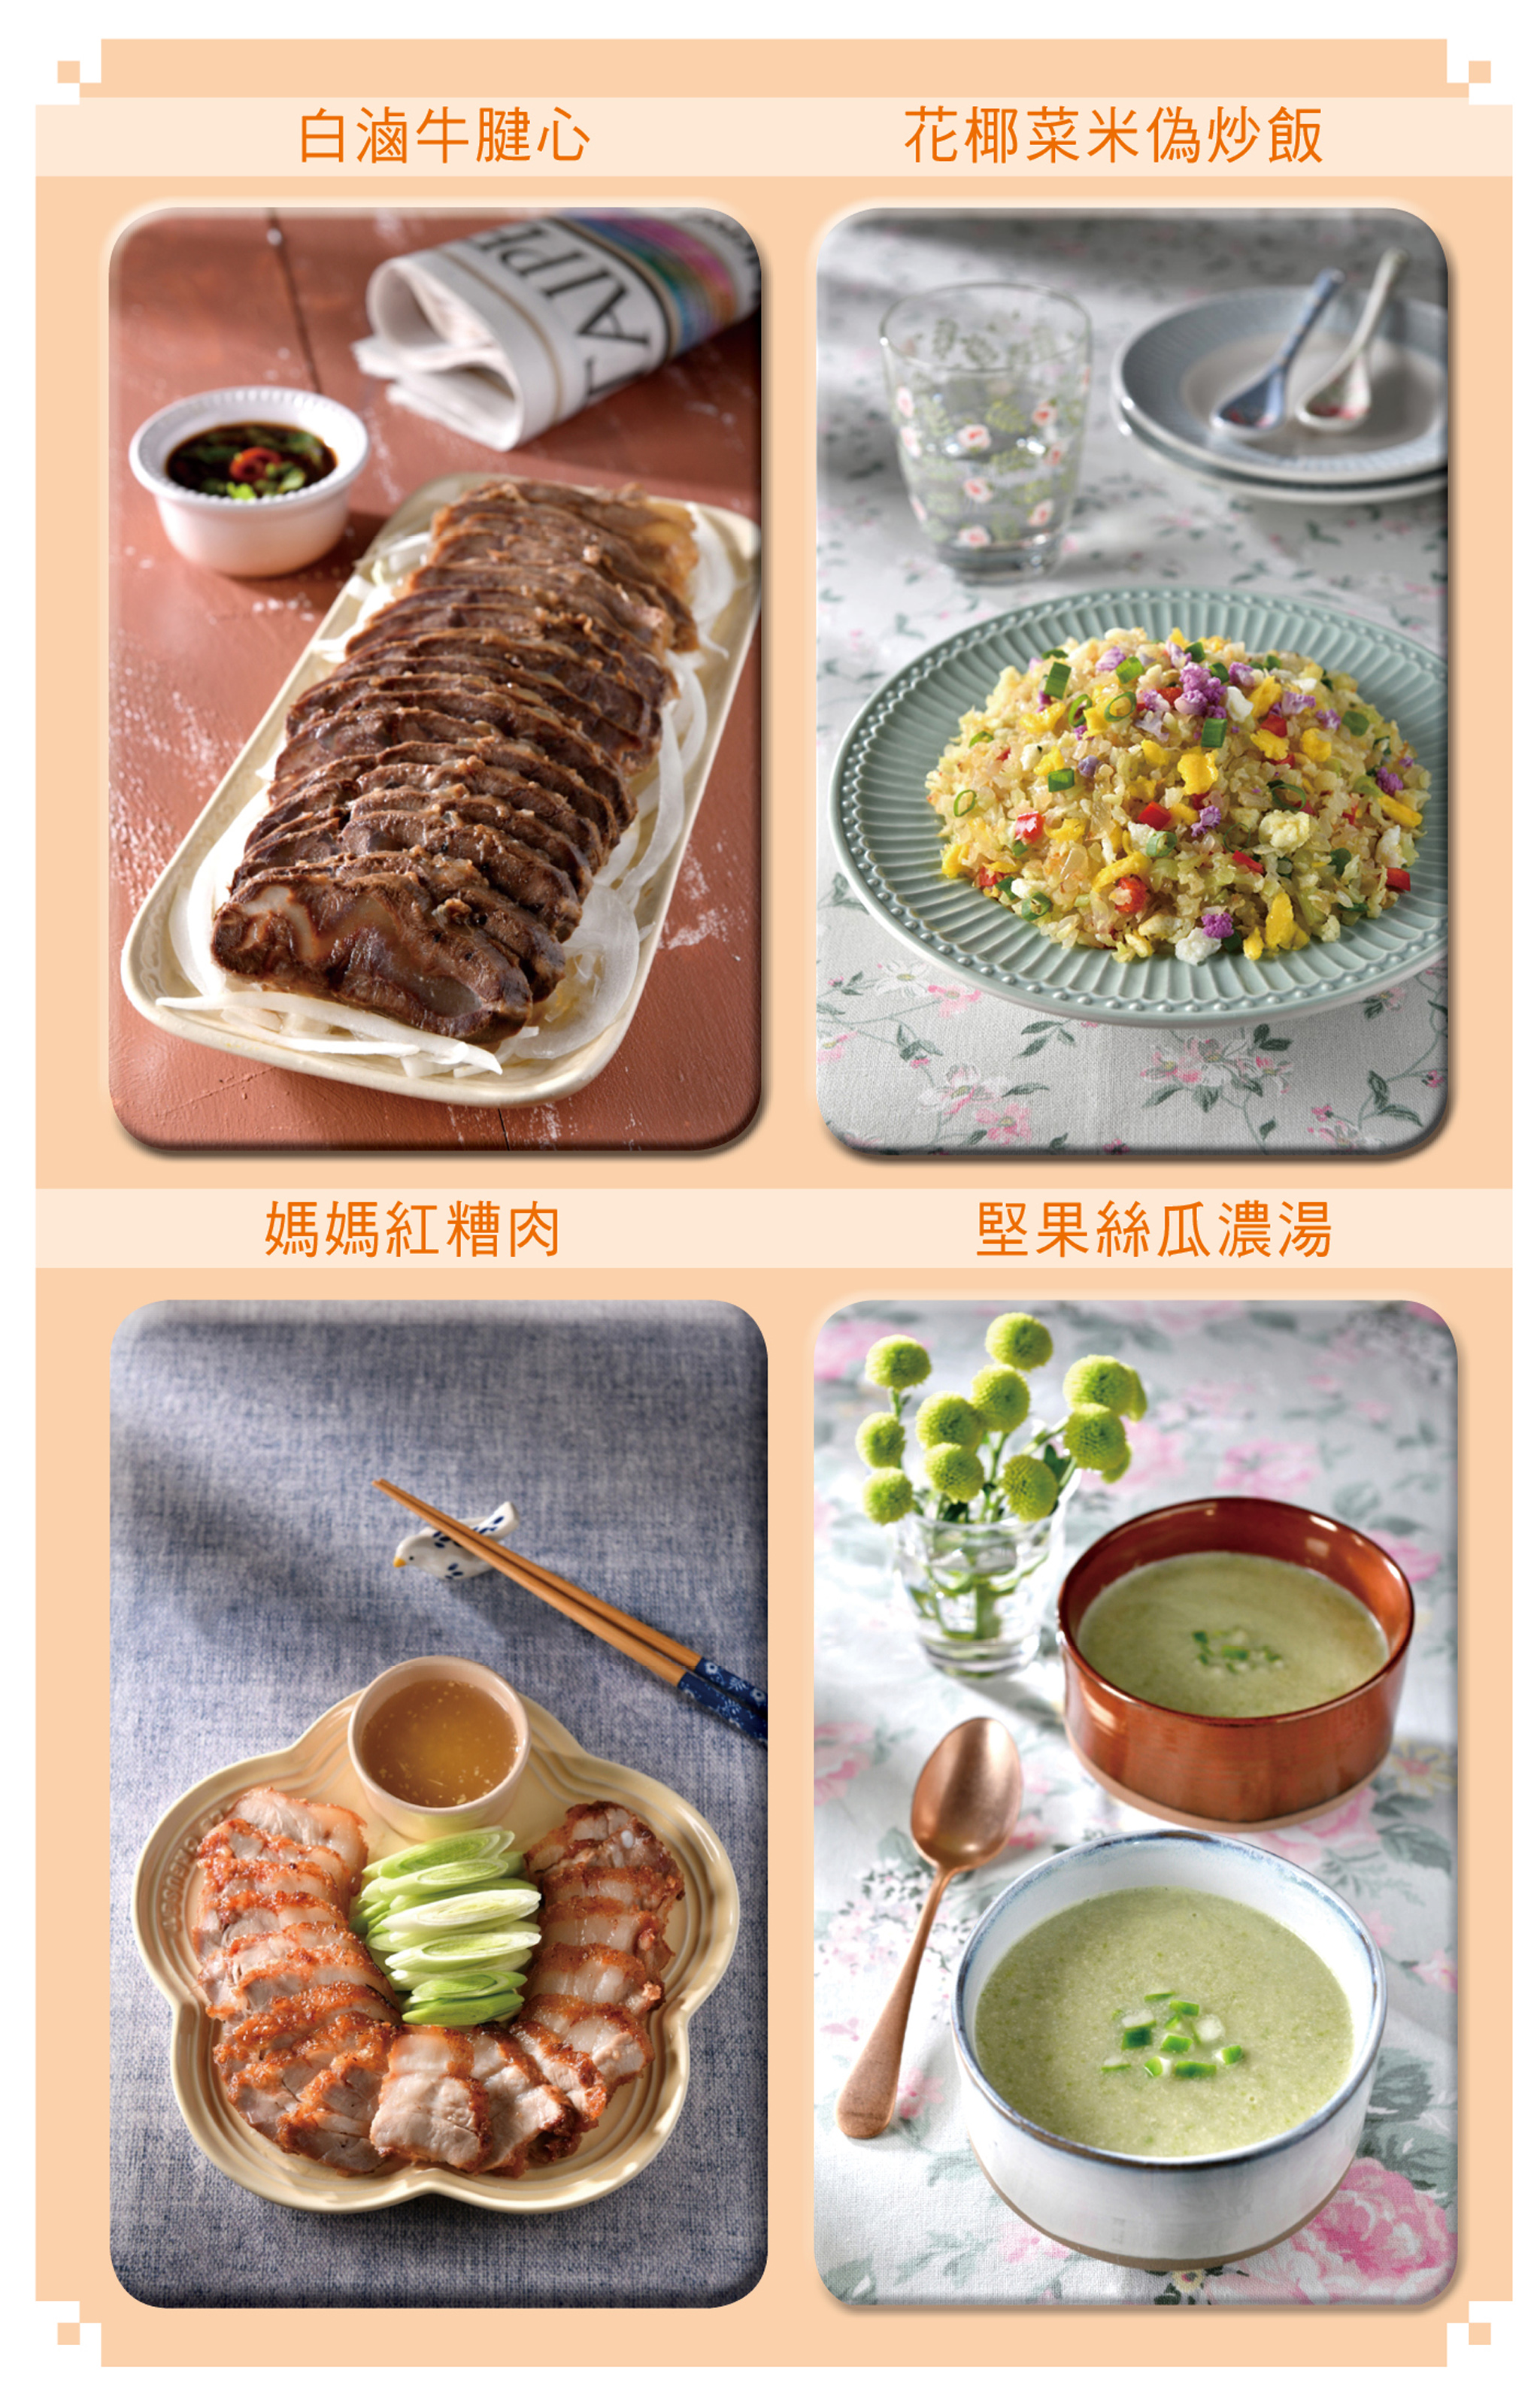 美味食譜DIY：白滷牛腱心、花椰菜米偽炒飯、媽媽紅糟肉、堅果絲瓜濃湯。